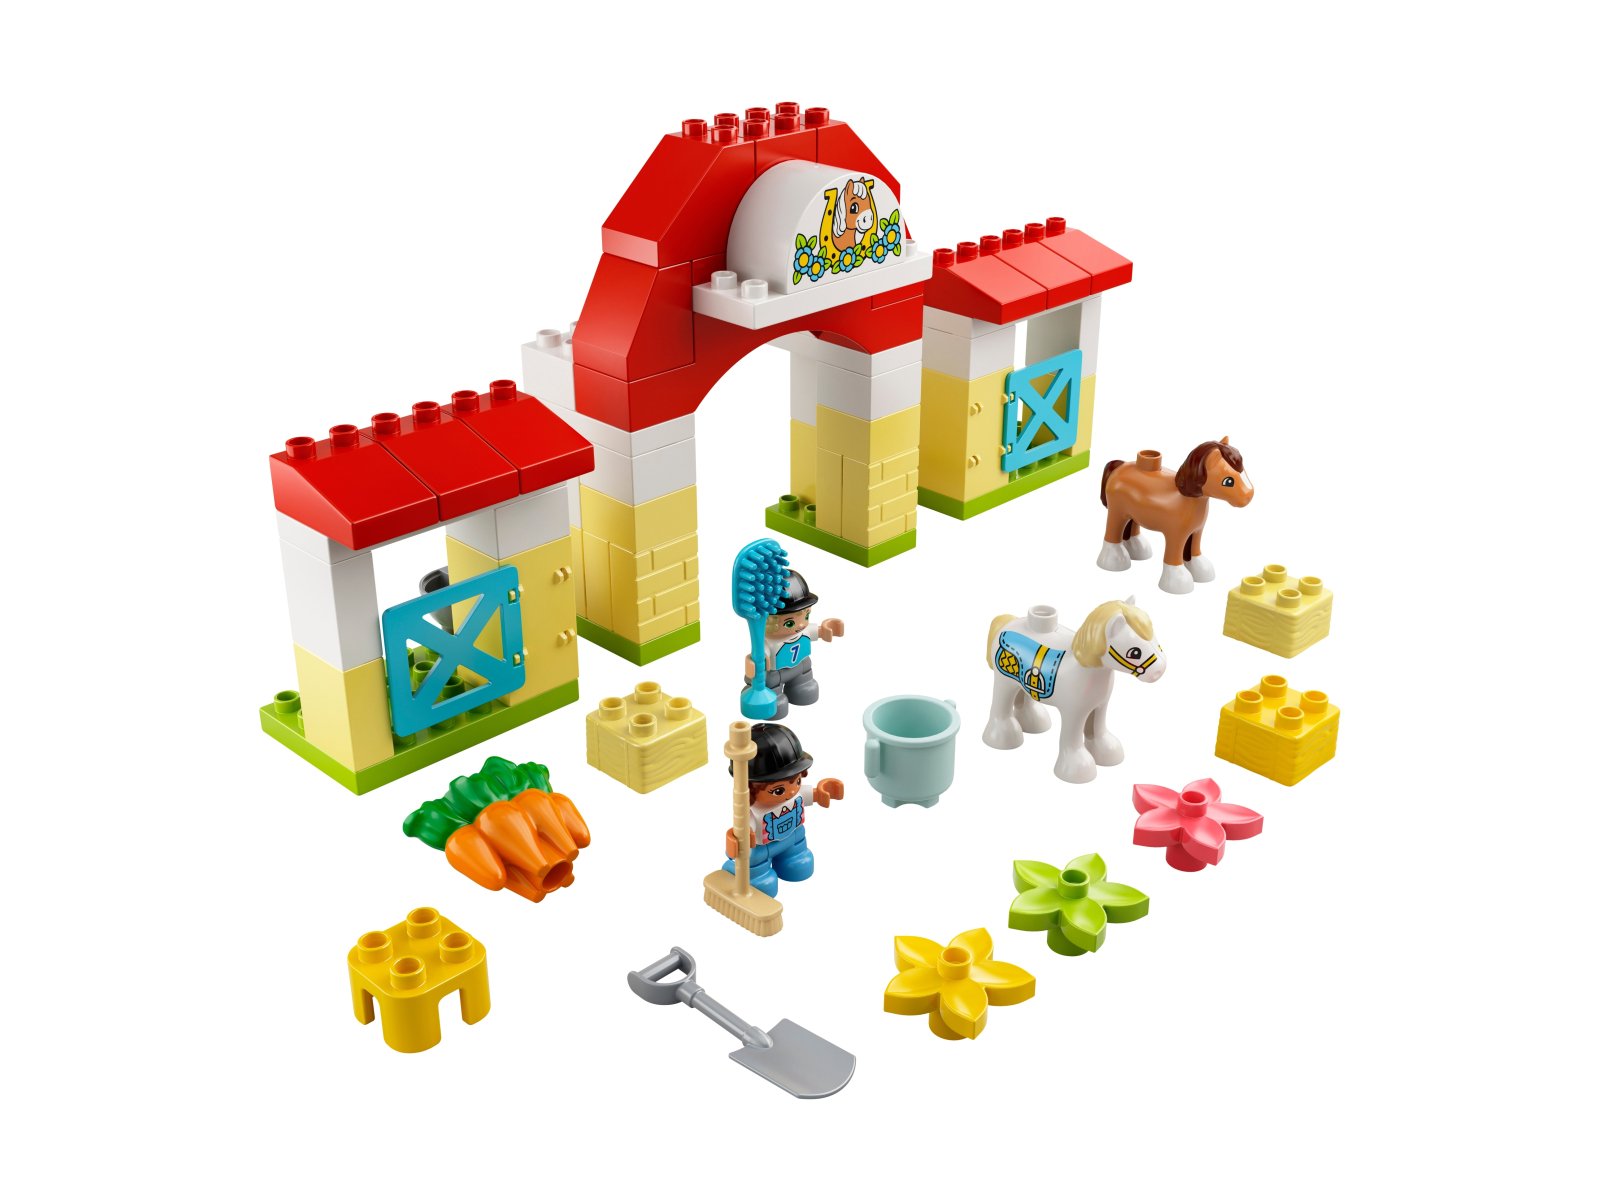 LEGO Duplo 10951 Stadnina i kucyki